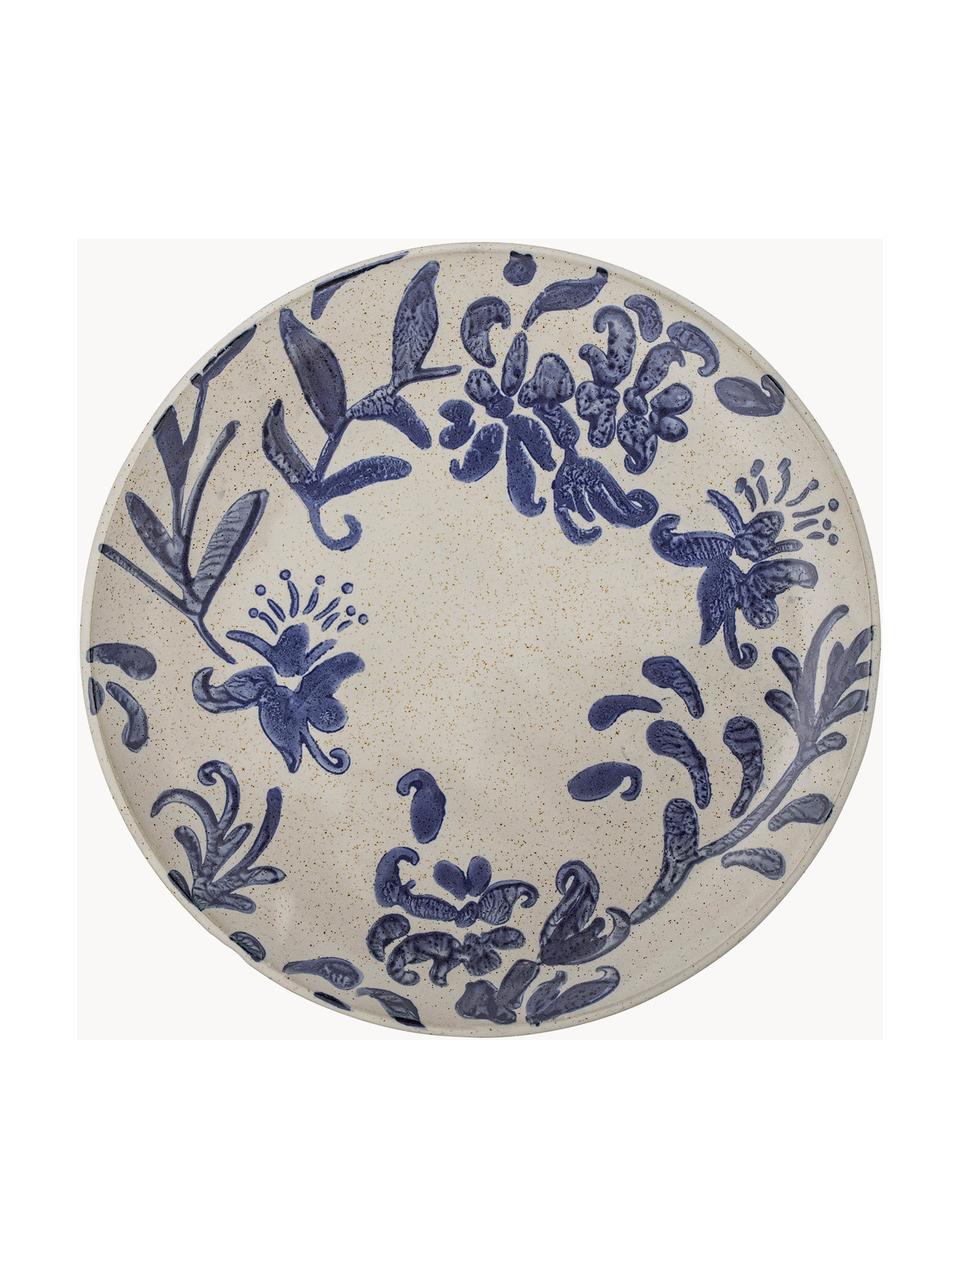 Piatti da colazione dipinti a mano con motivo floreale Petunia 6 pz, Gres, Beige chiaro, blu, maculato, Ø 19 cm